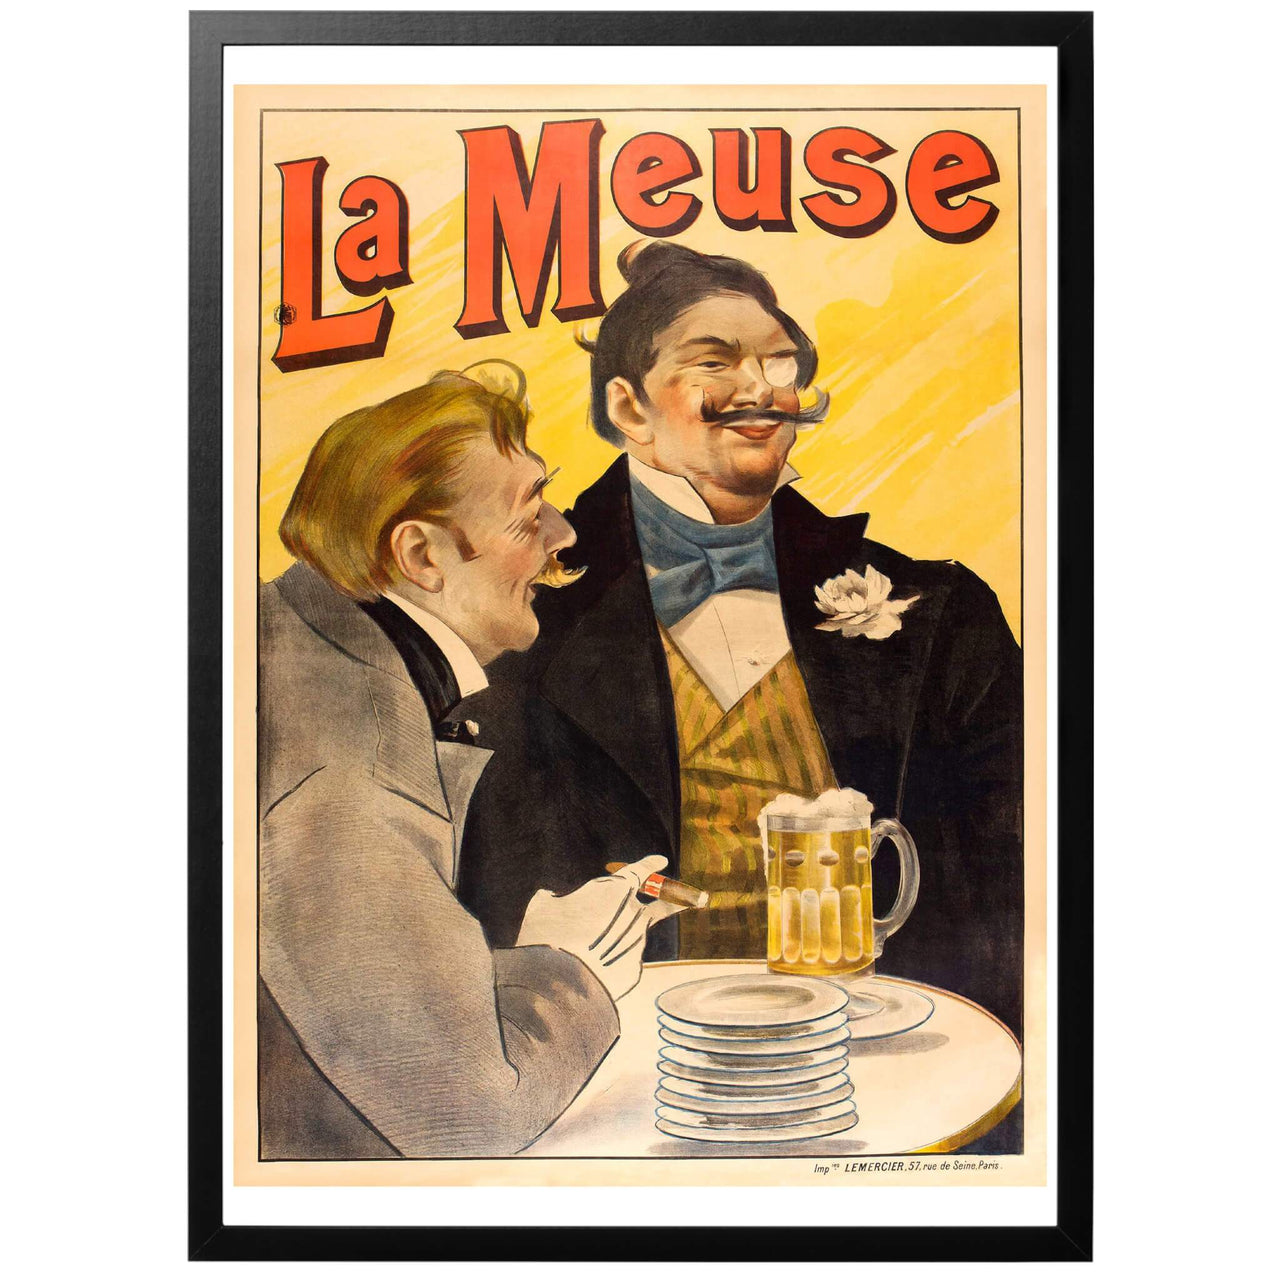 La Meuse Sv - (Namnet på ölet och floden med samma namn) Fransk ölaffisch från 1895. Konstnär: Luděk Marold​. Denna franska affisch målades av den tjeckiska konstnären Ludek Marold för La Meuse, det franska ölet från Bar-le-Duc vid Meuse-floden. Tryckt omkring 1895 och är ikonisk för belle époque-stilen. 